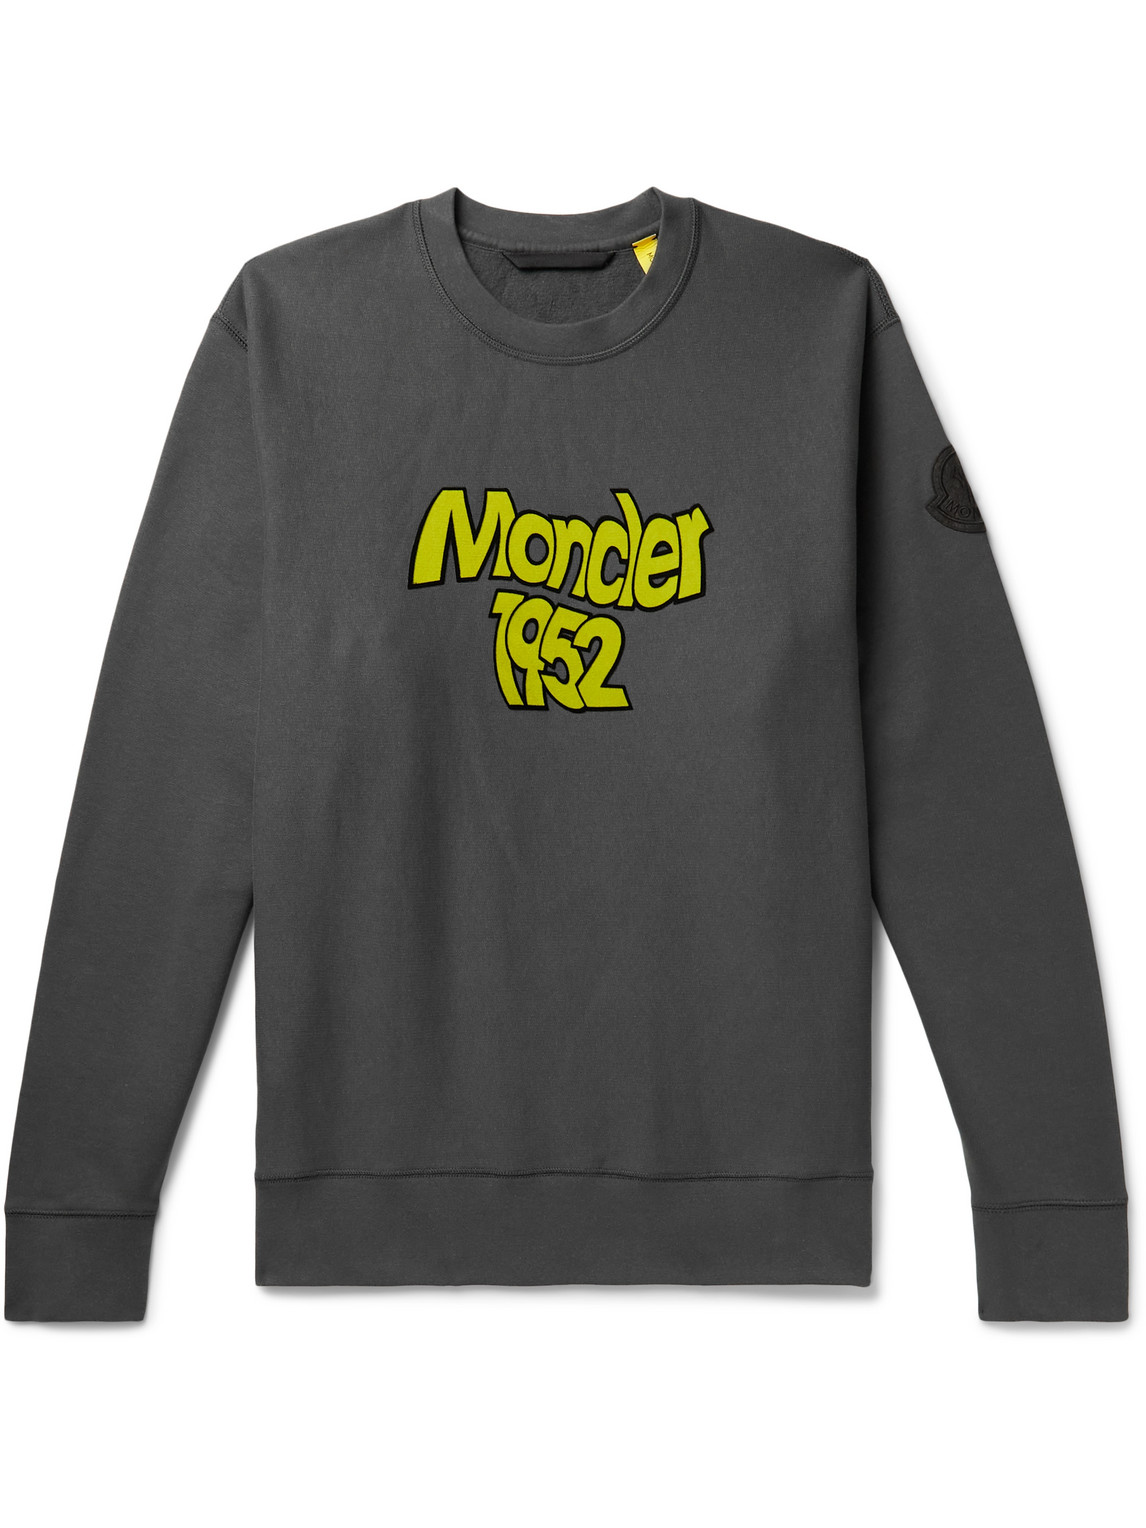 2 Moncler 1952 Logo-Flocked Cotton-Jersey Sweatshirt